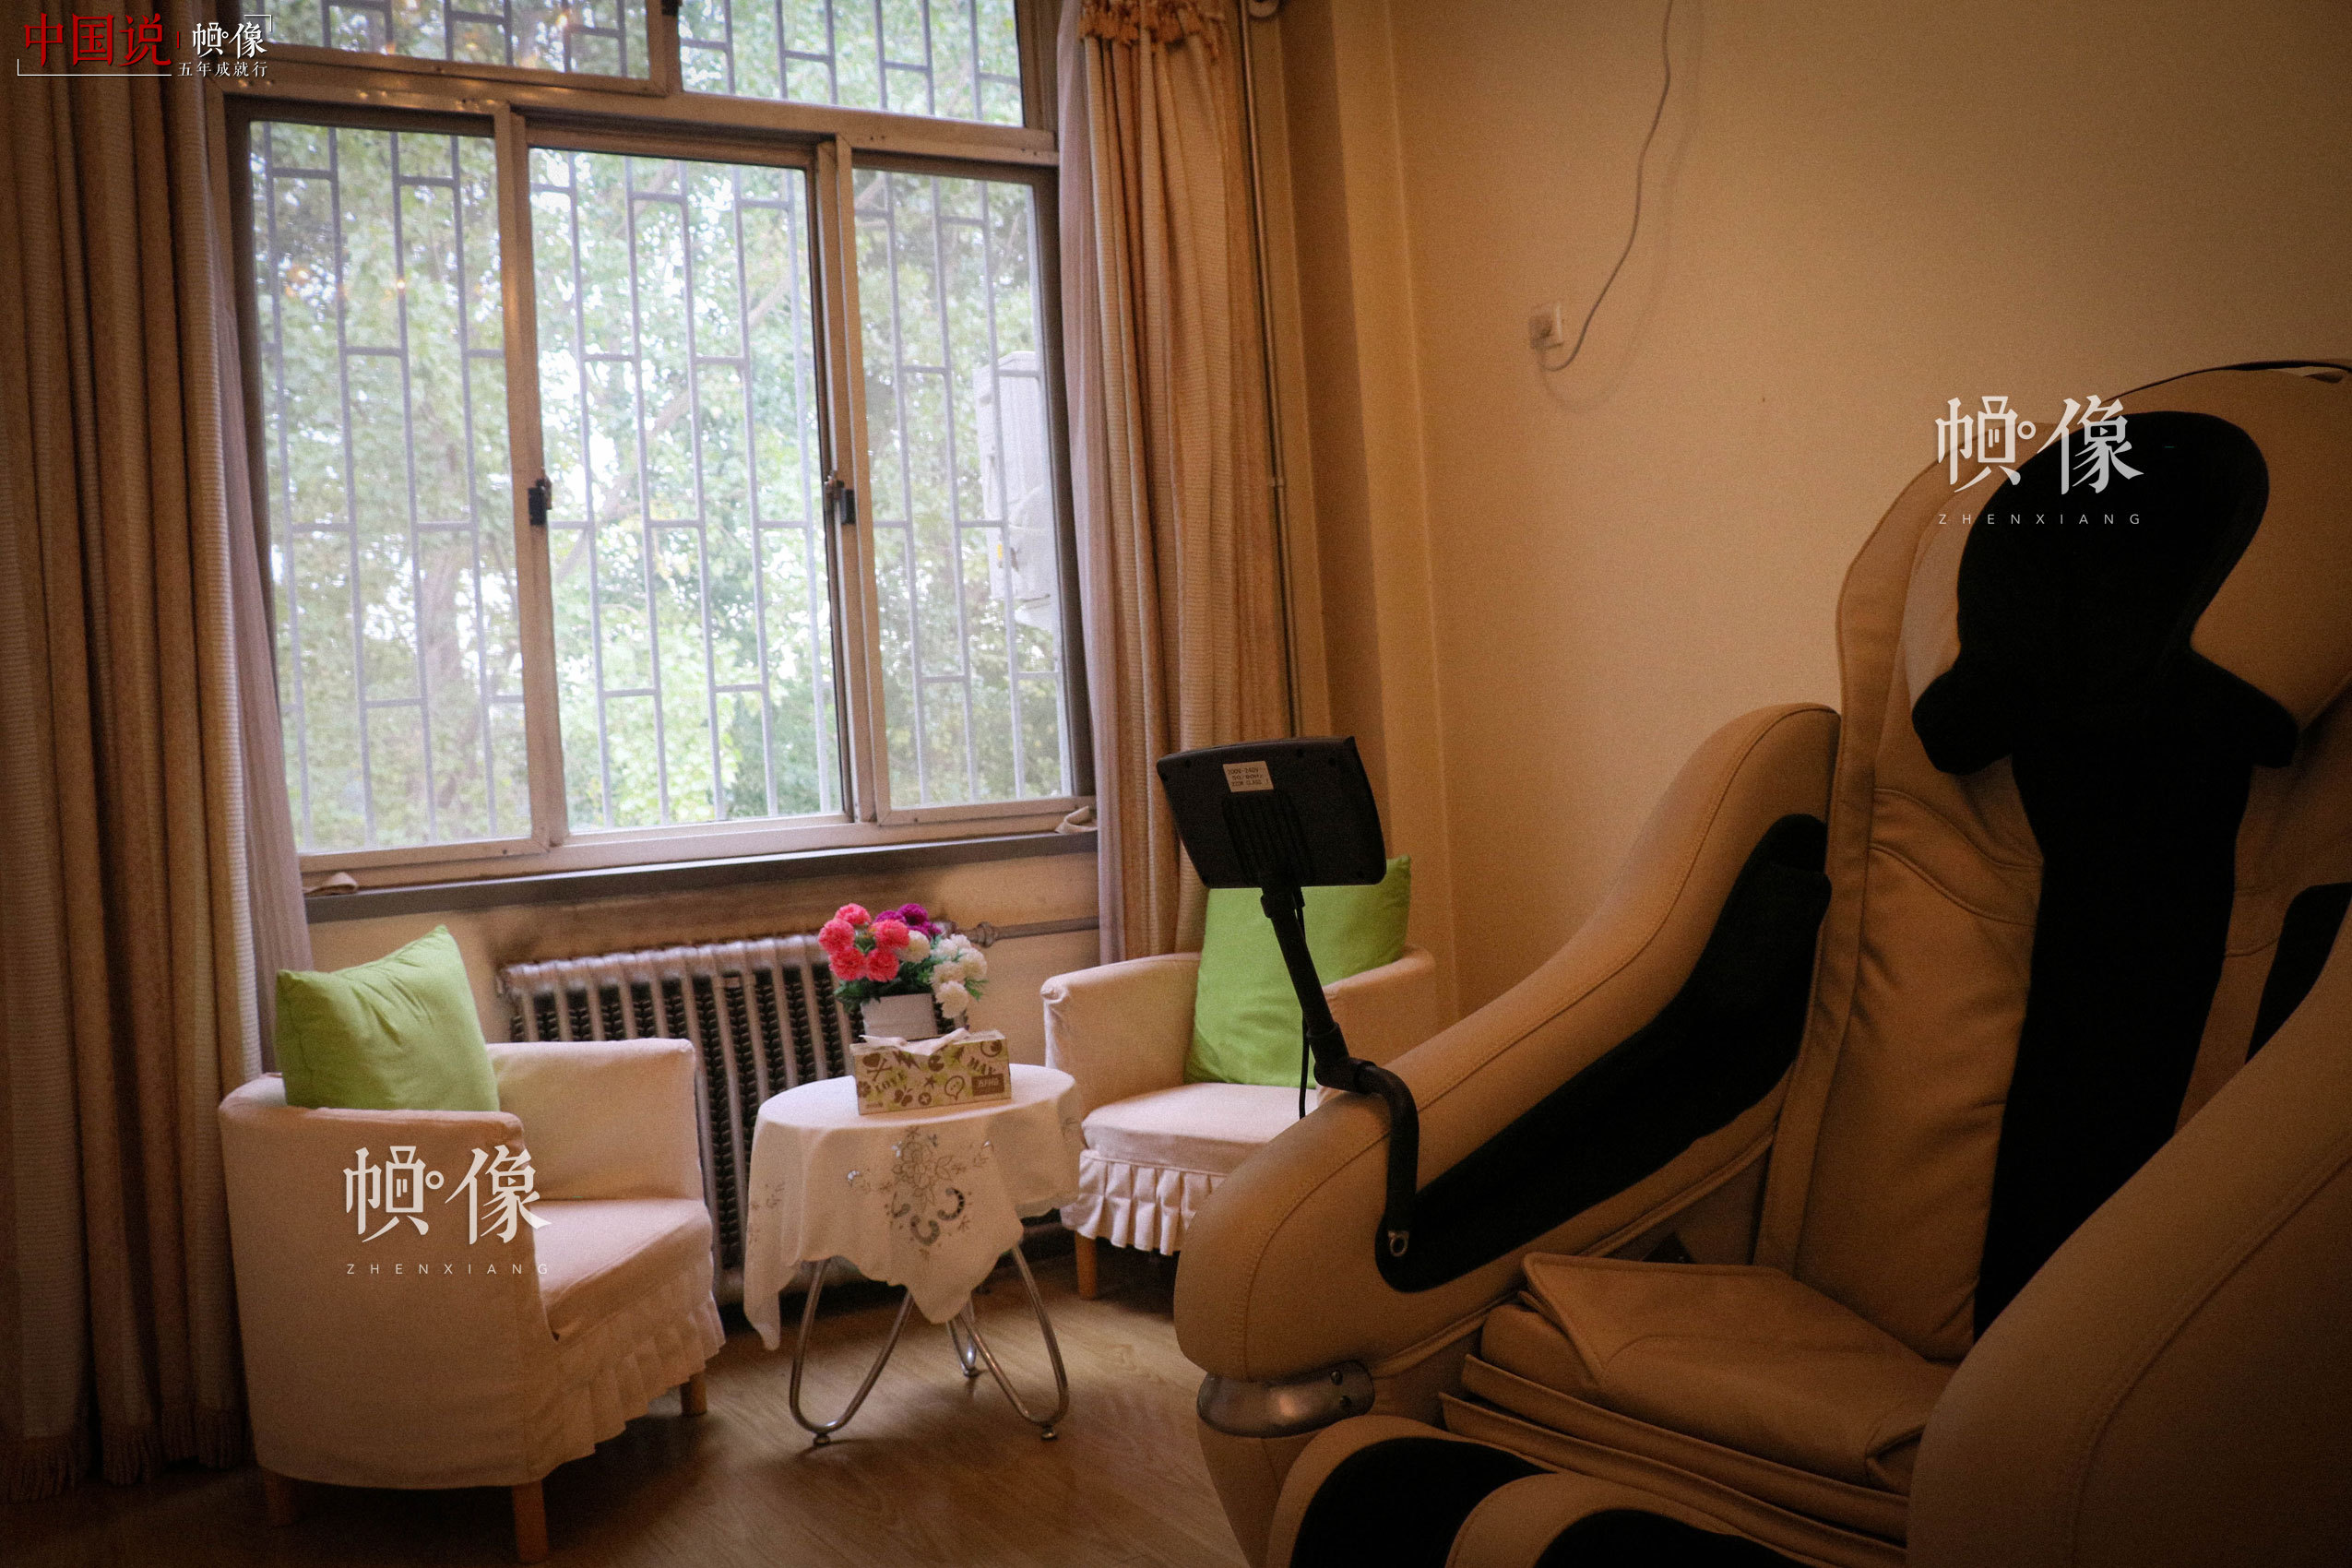 北京市天堂河女子教育矫治所心理治疗室。中国网记者 赵超 摄